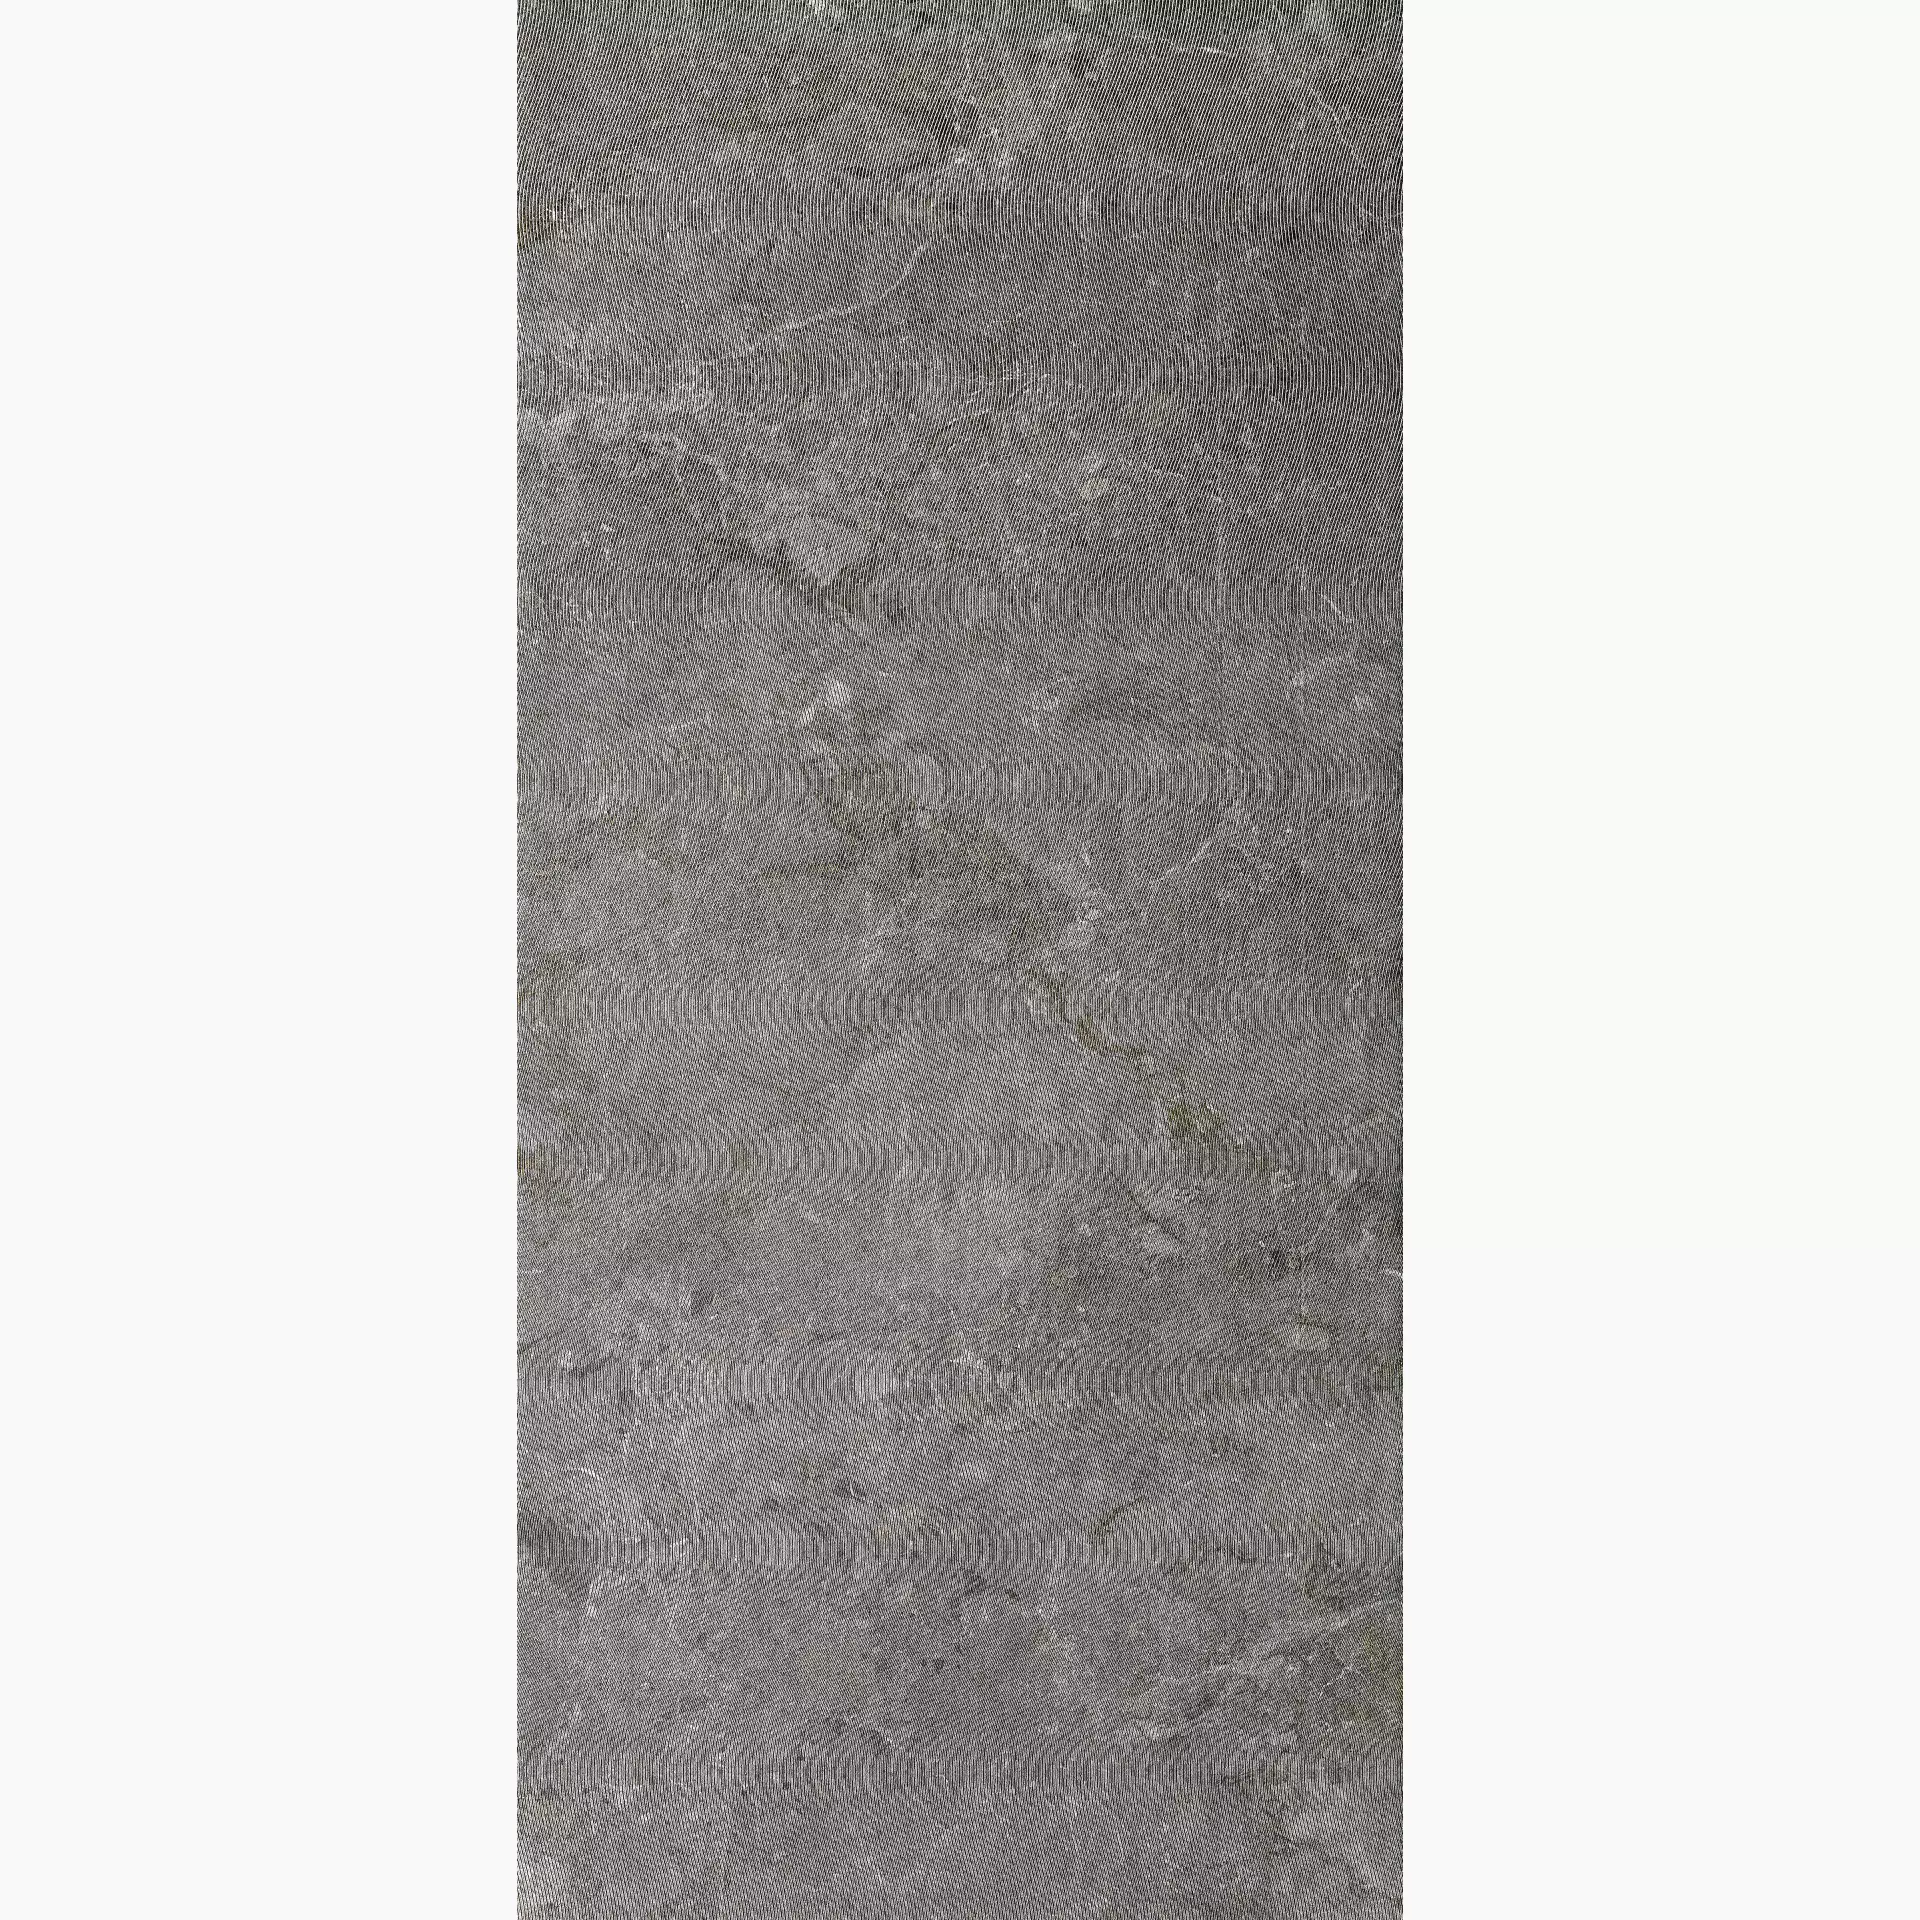 Del Conca Hse Stone Edition Dinamik Breccia Grey Hse Naturale Breccia Grey Hse LZSE05STORIR natur struktur 120x260cm Stories rektifiziert 6,5mm